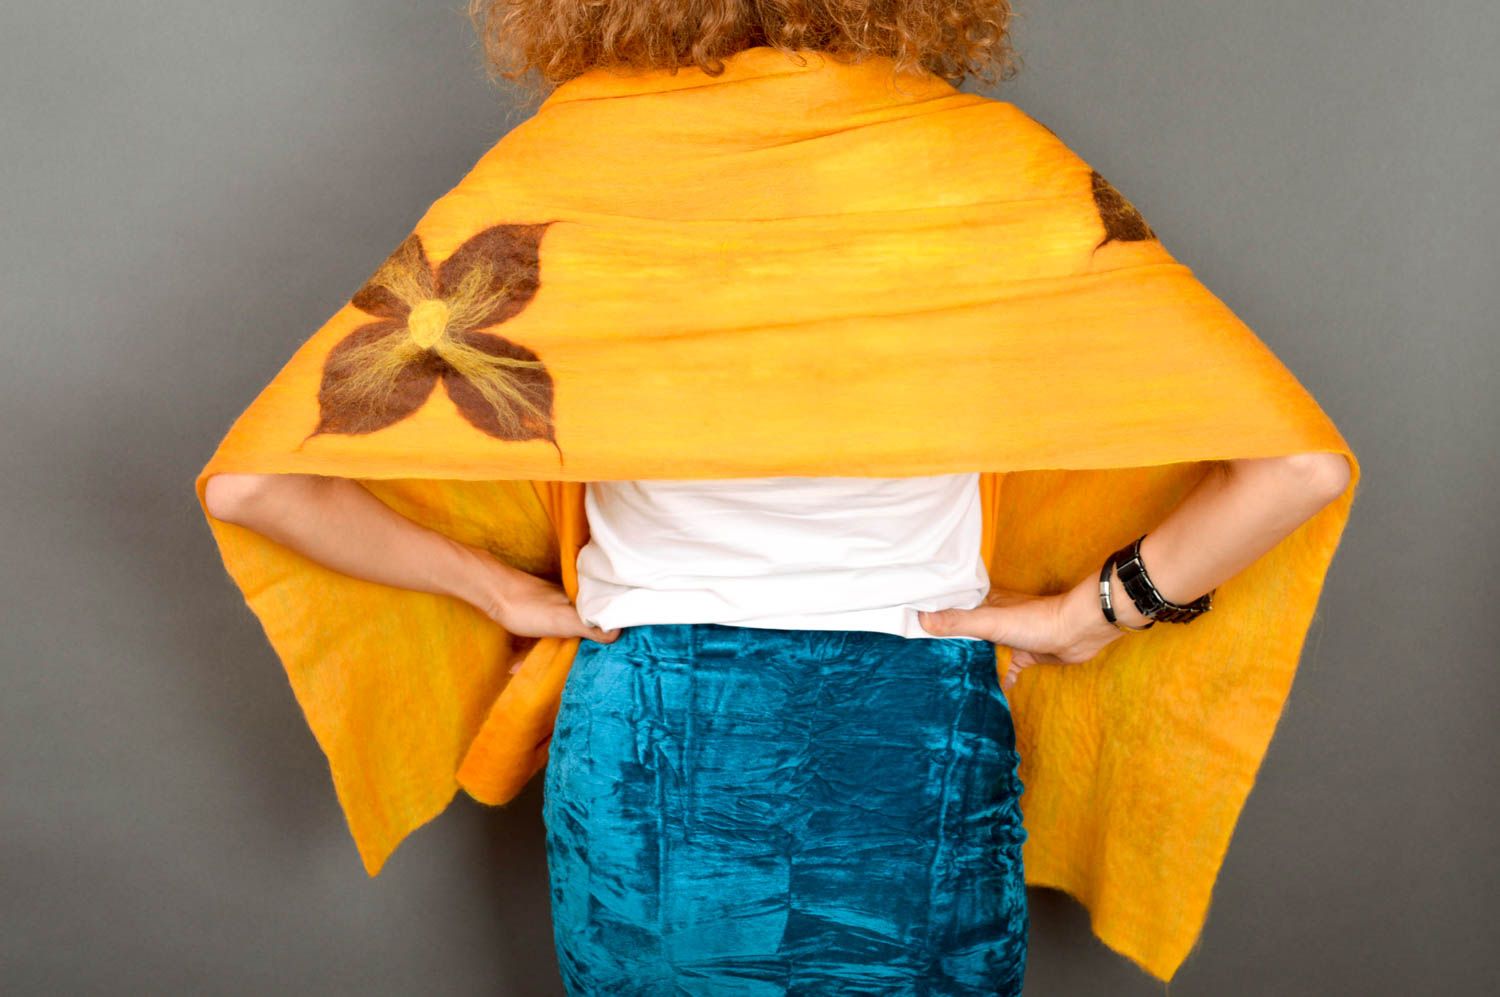 Handmade gefilzter Schal Frauen Accessoire schöner Schal aus Wolle gelb foto 5